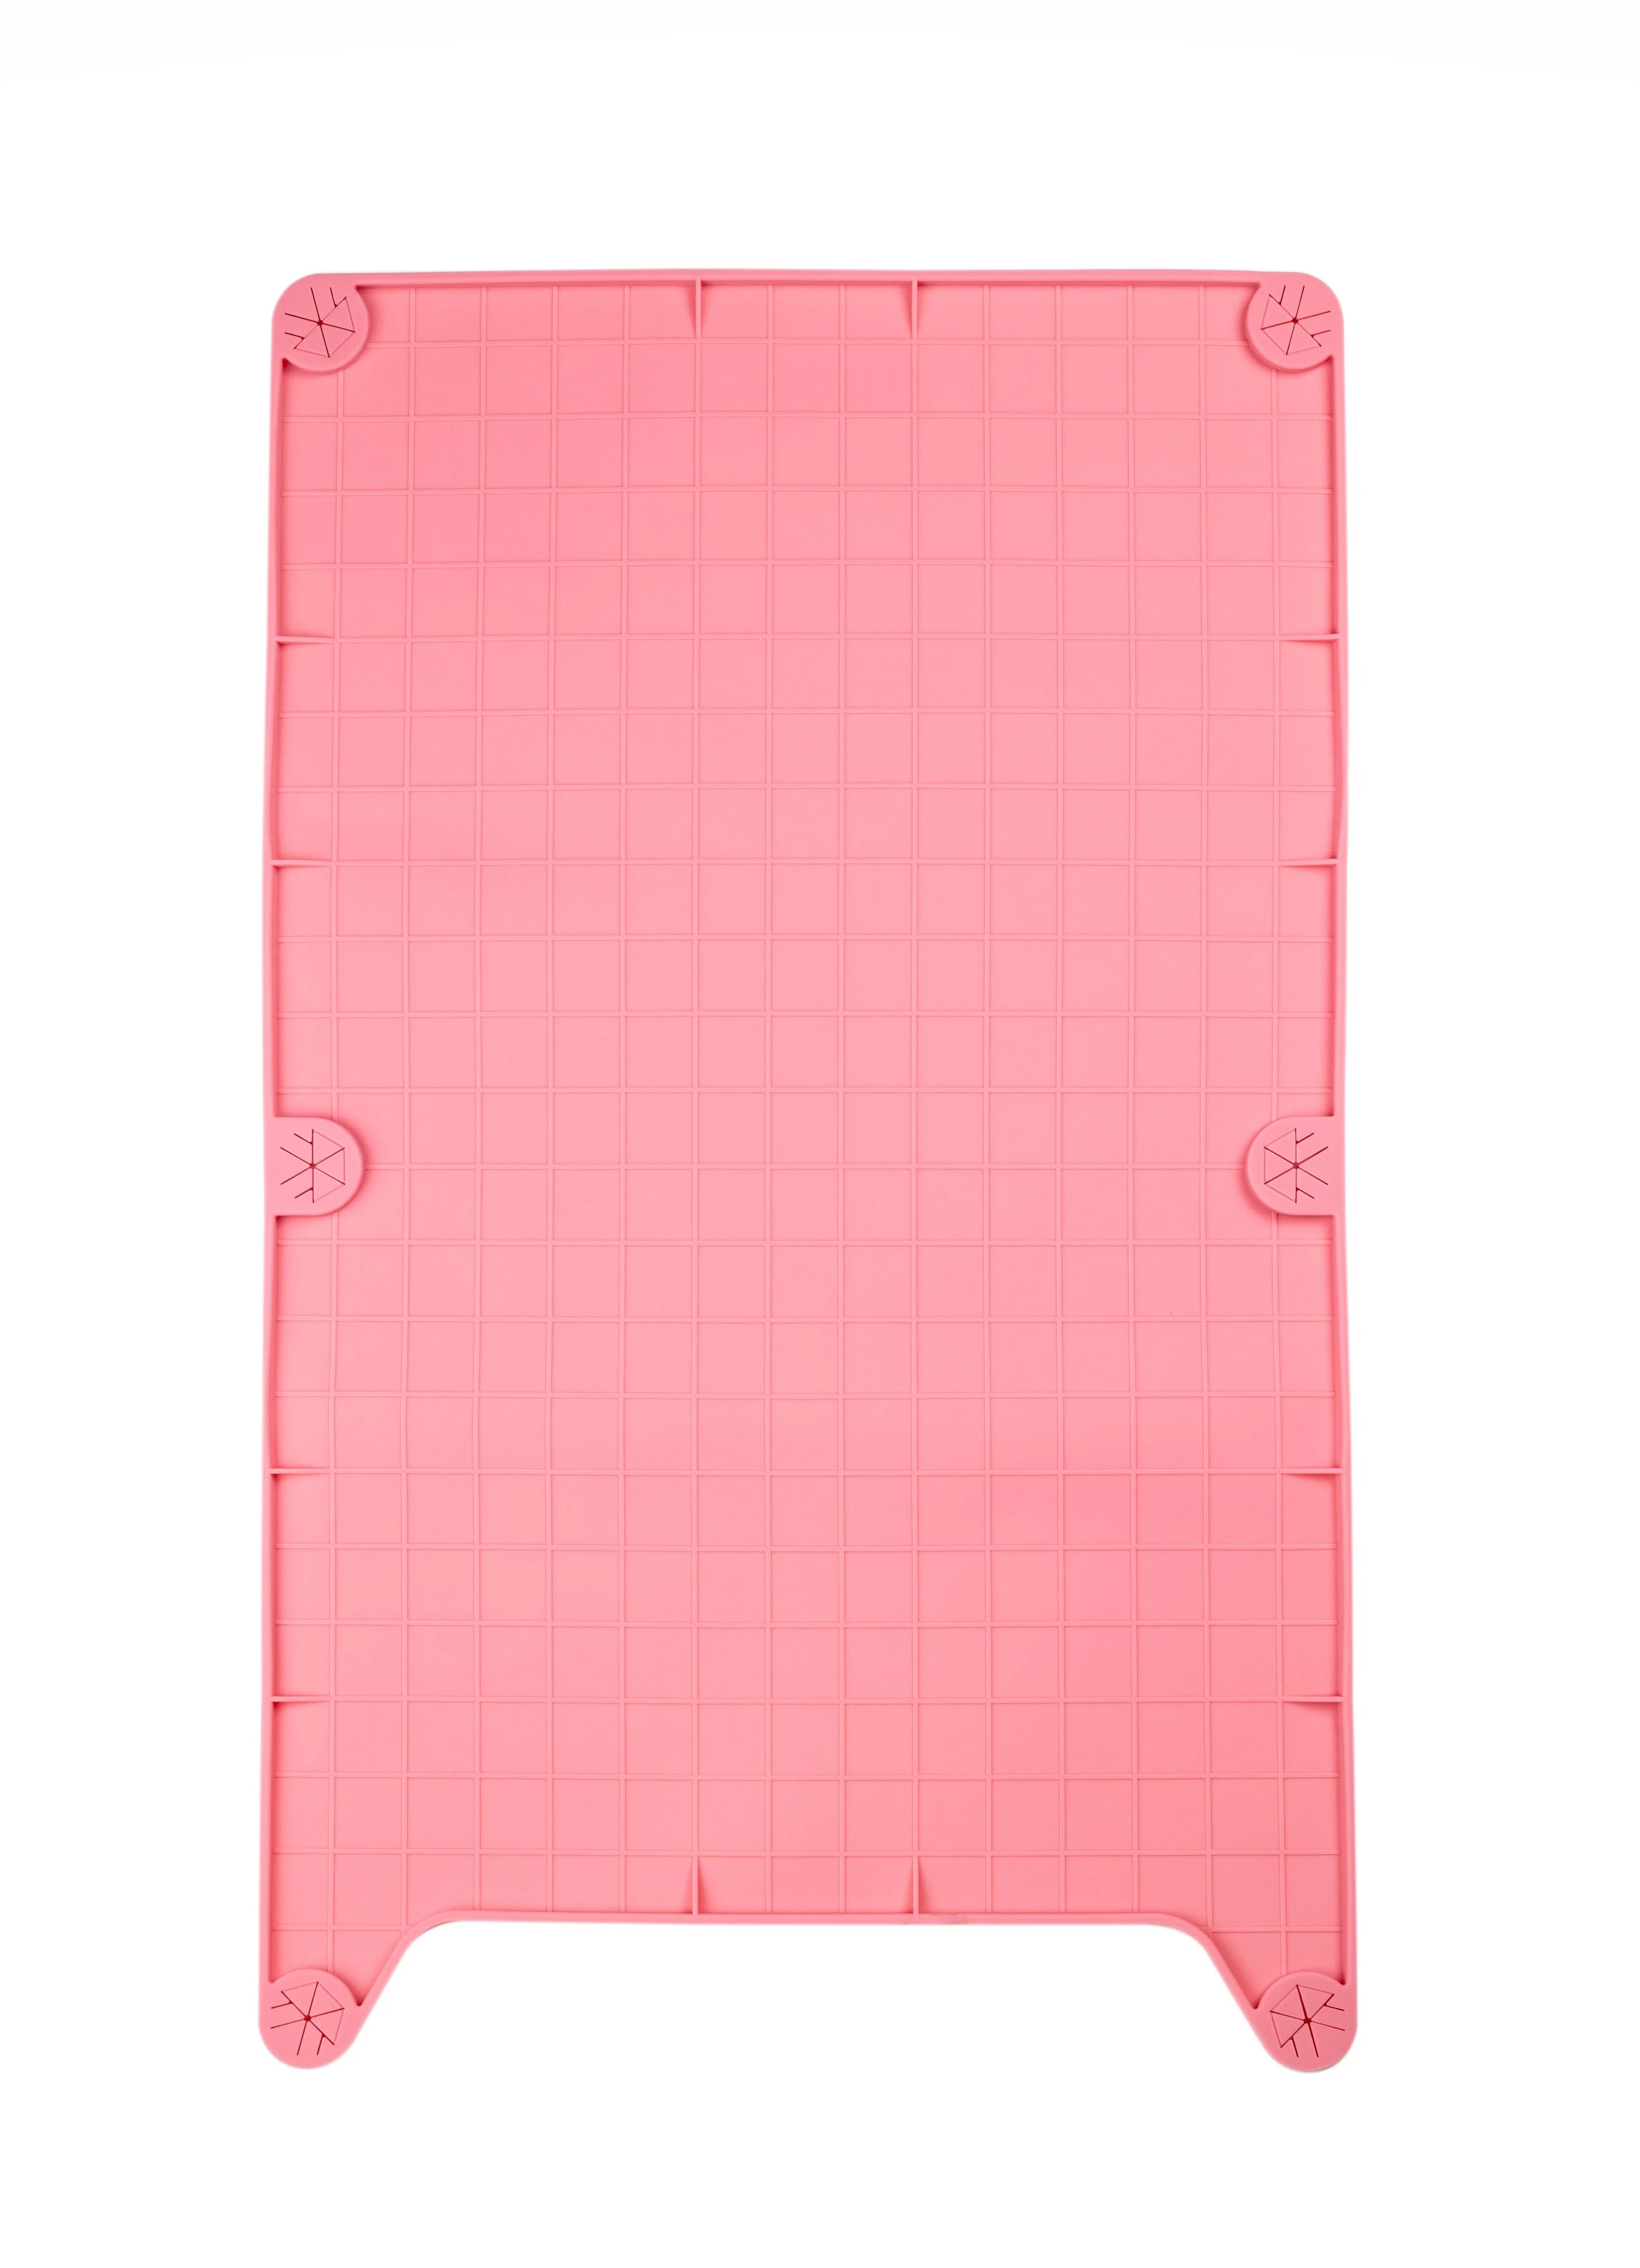  Коврик силиконовый Pefami, для переносок, 22х40см, розовый